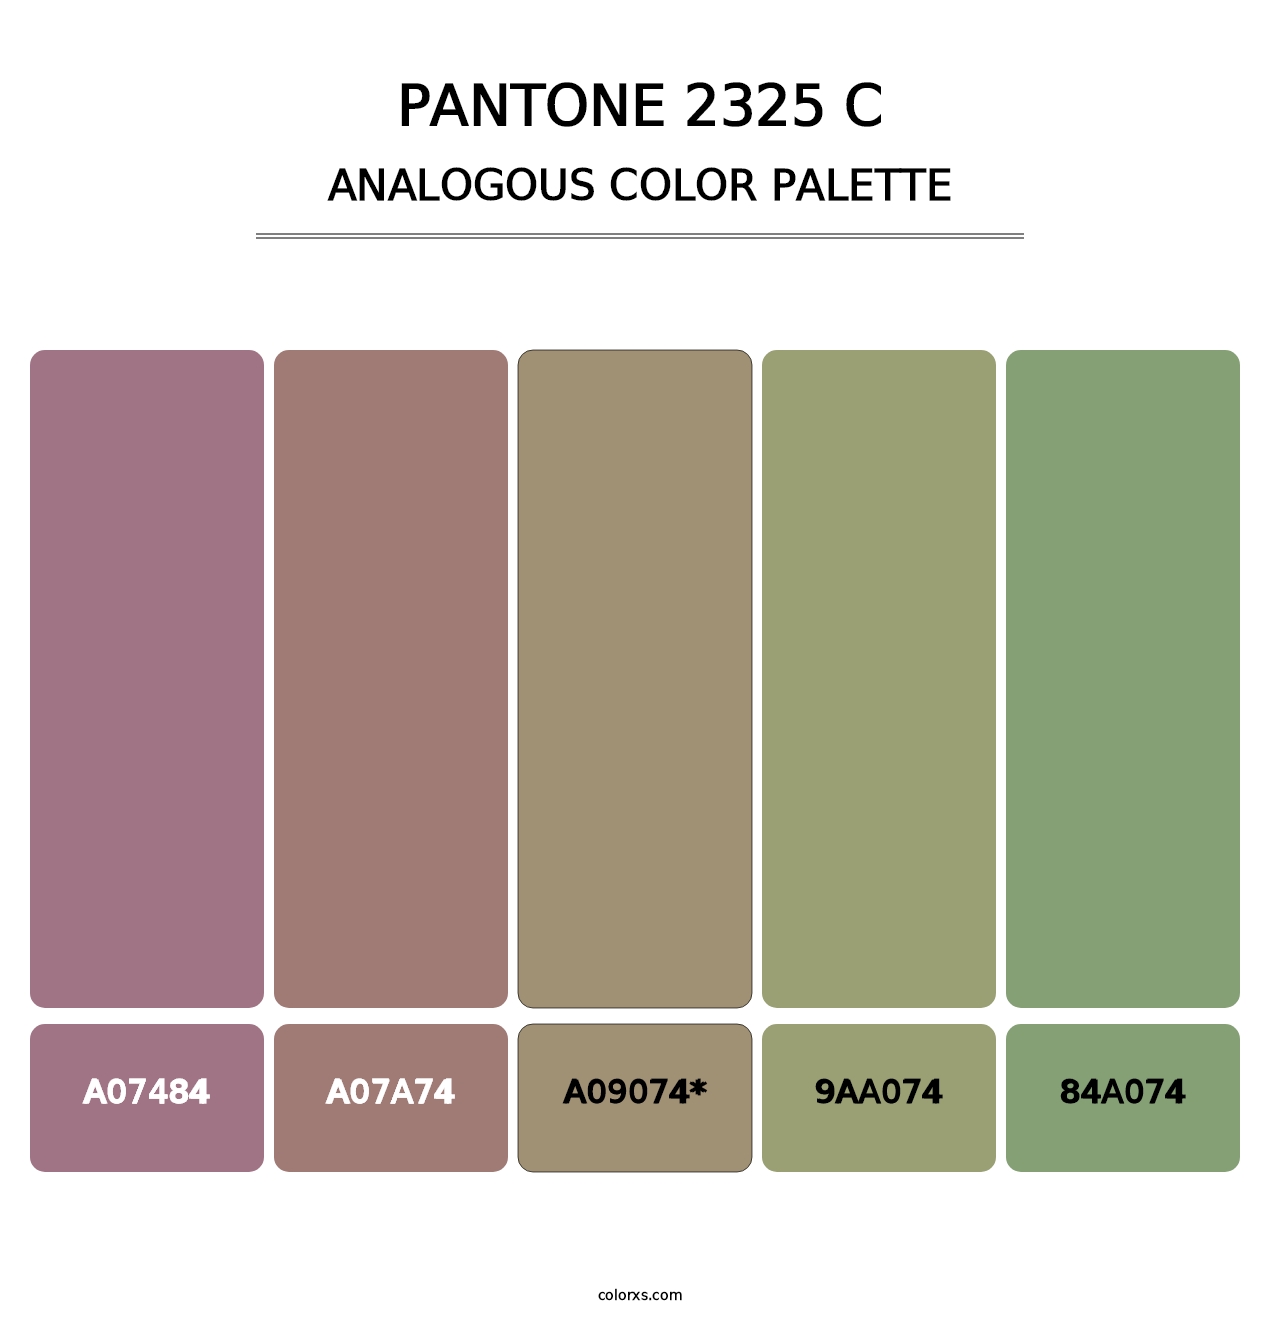 PANTONE 2325 C - Analogous Color Palette